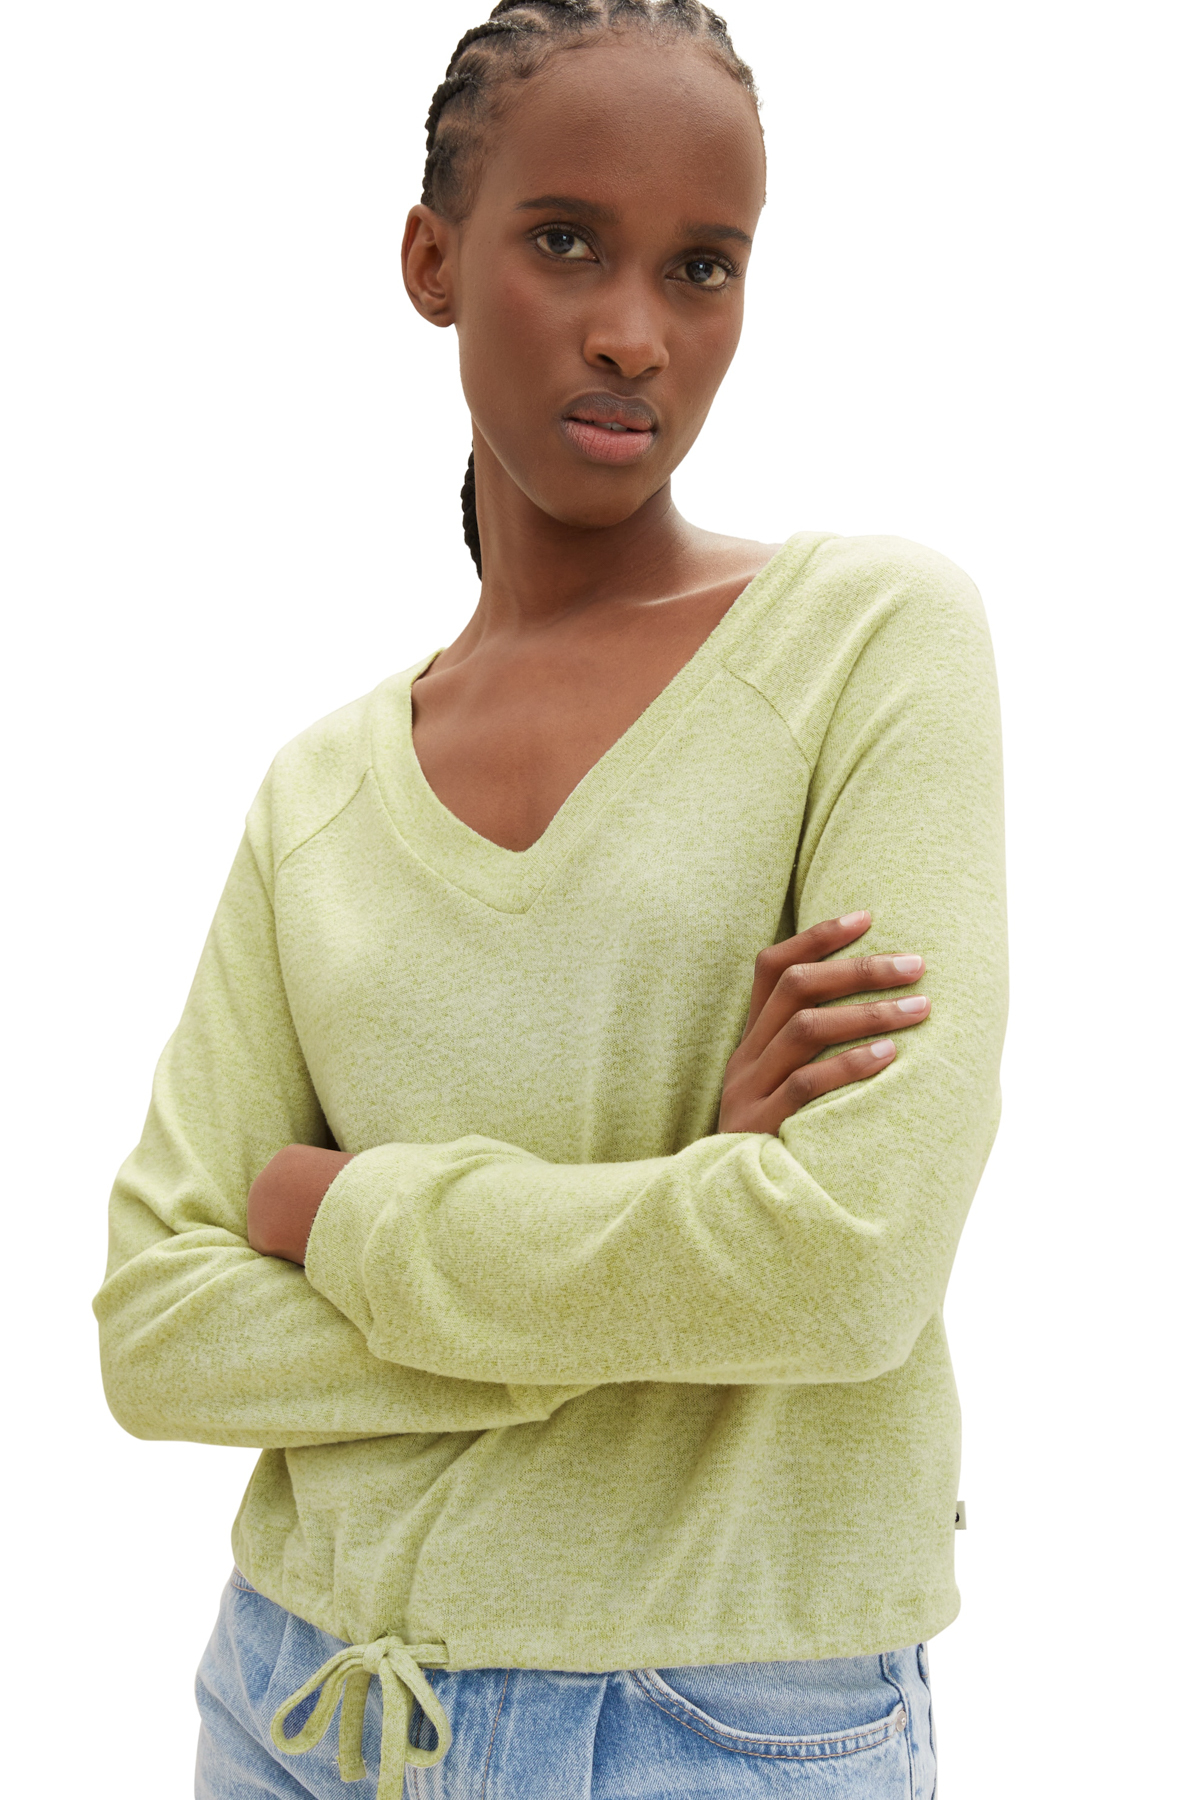 Футболка Женская/Девочка уютная футболка реглан Tom Tailor Denim, зеленый джемпер tom tailor размер s зеленый